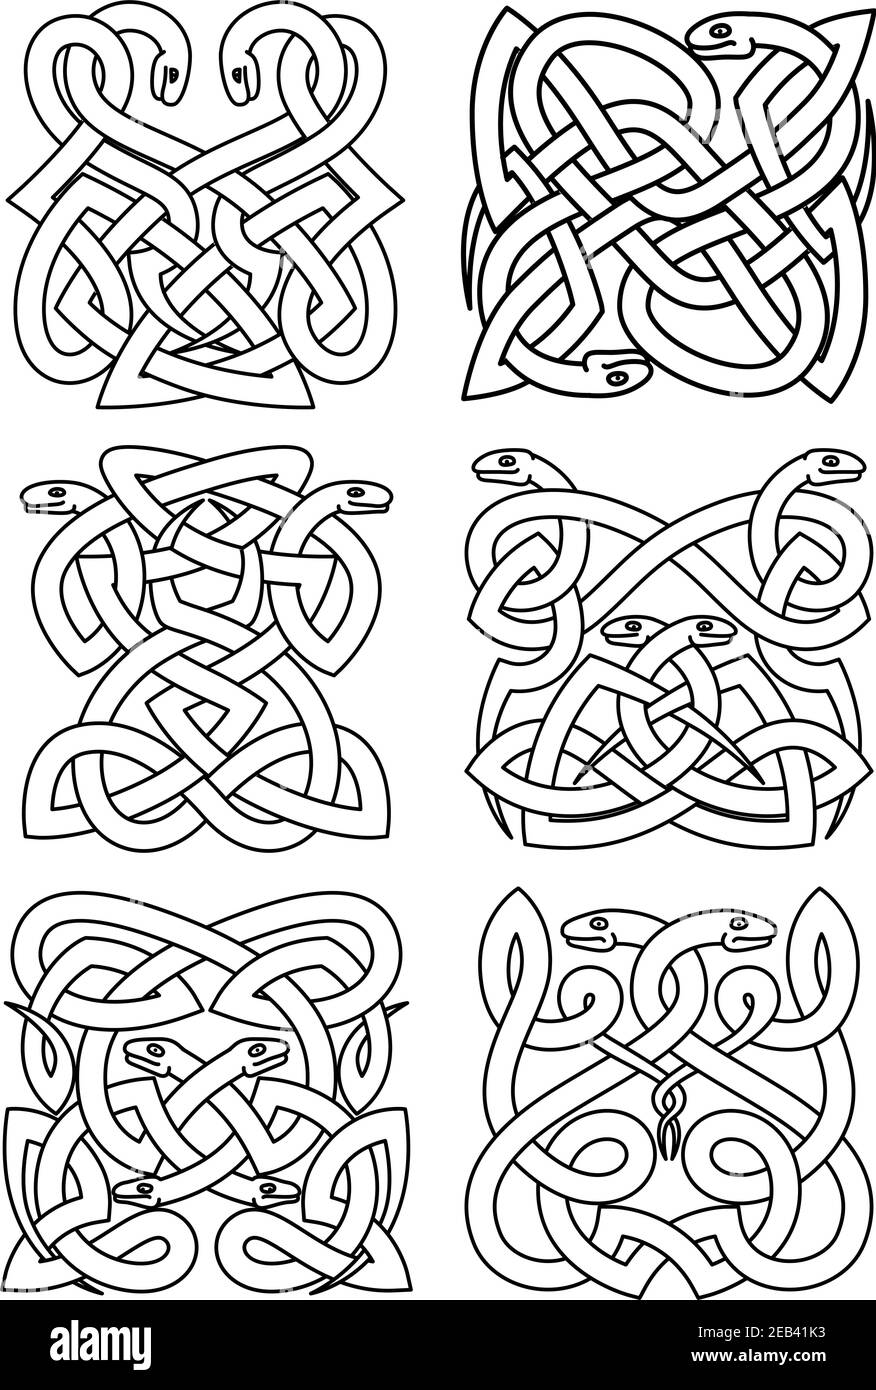 Gotische keltische Tiermuster von gewickelten Schlangen in traditionellen Knotenornamenten. Vintage Verzierung, Totem, Muster, Tattoo oder T-Shirt drucken Verwendung Stock Vektor